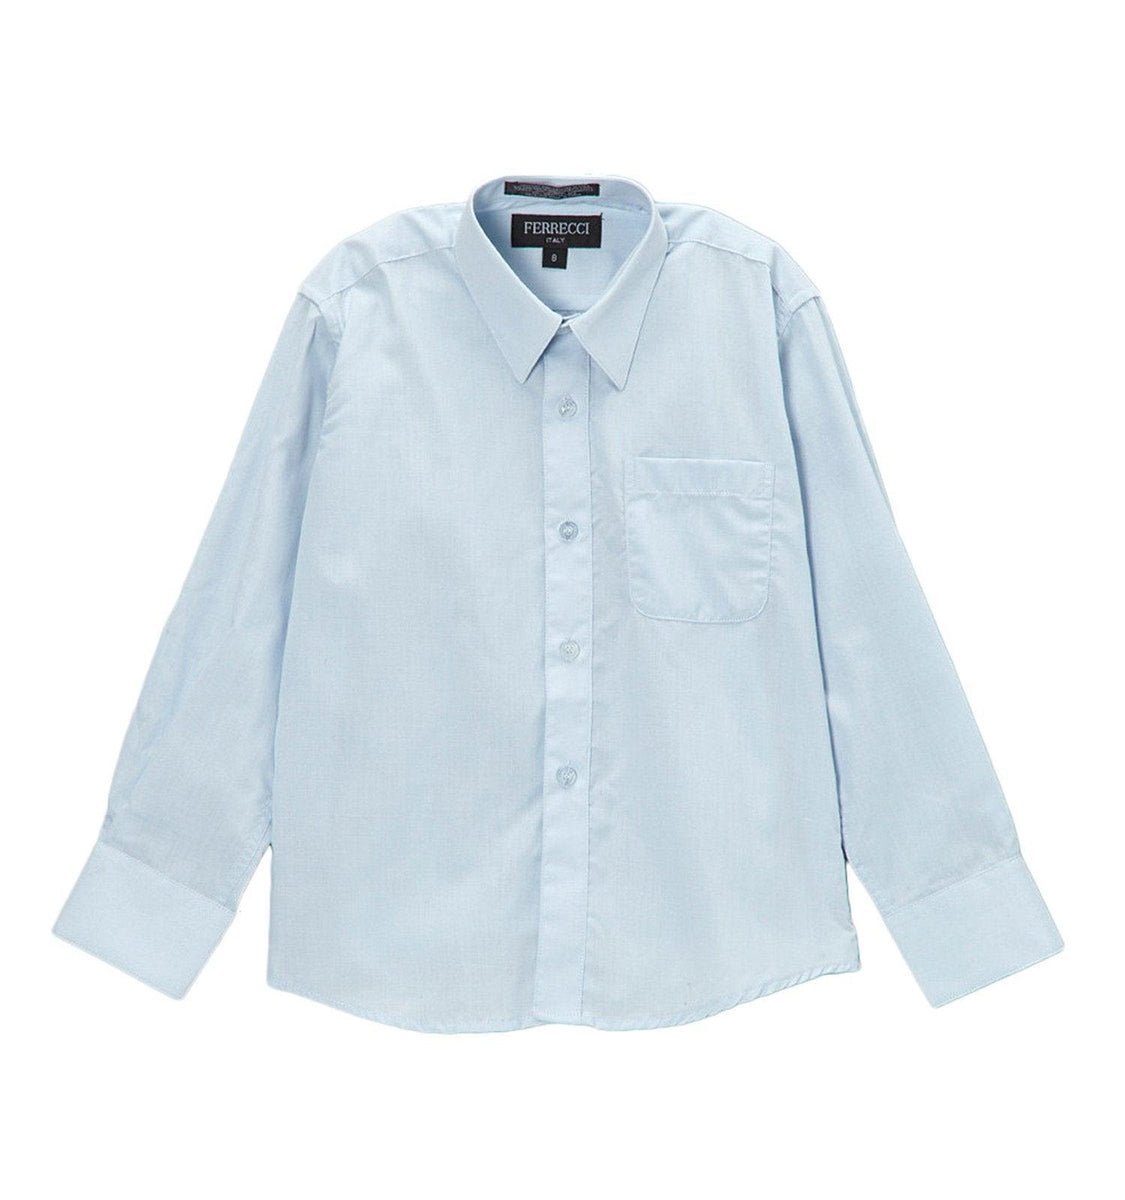 Premium Solid Cotton Blend Light Blue Shirt